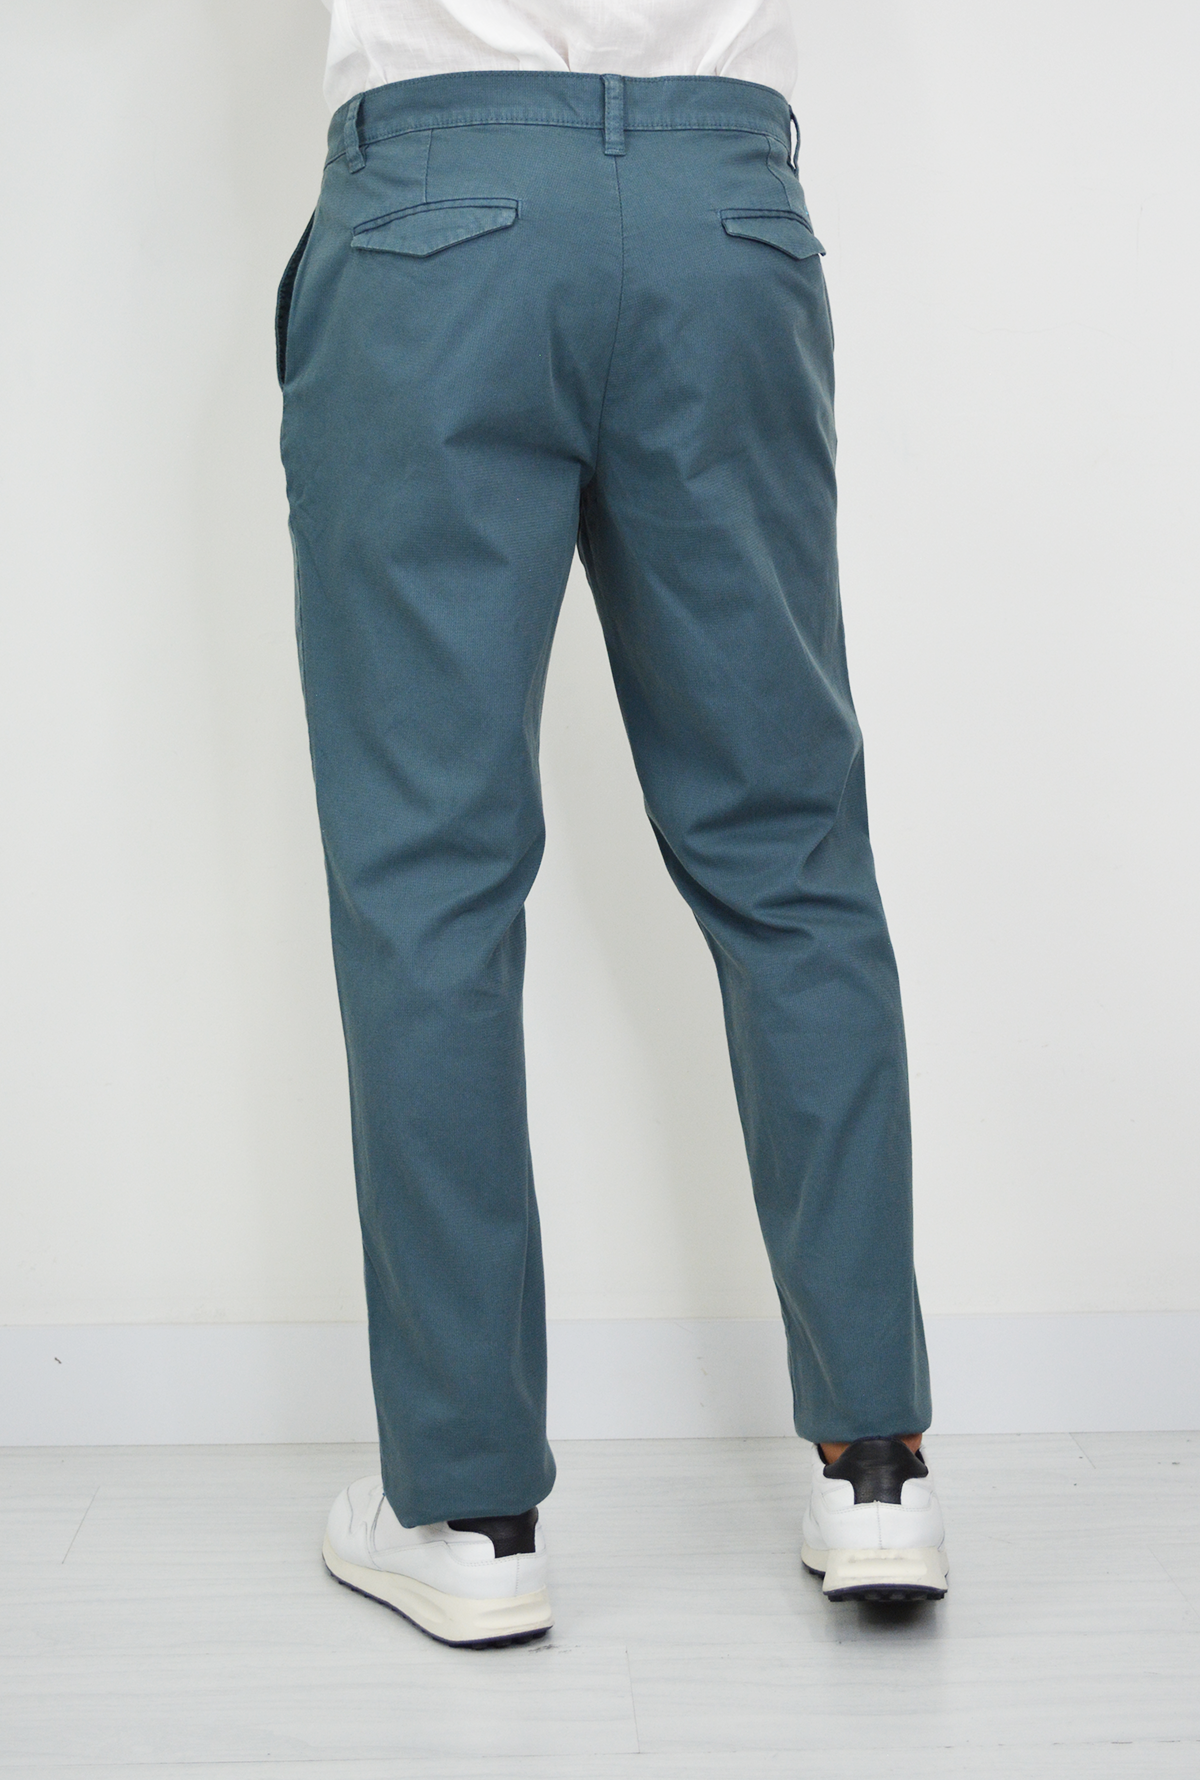 Pantalón Azul Medio Para Hombre DPC1032